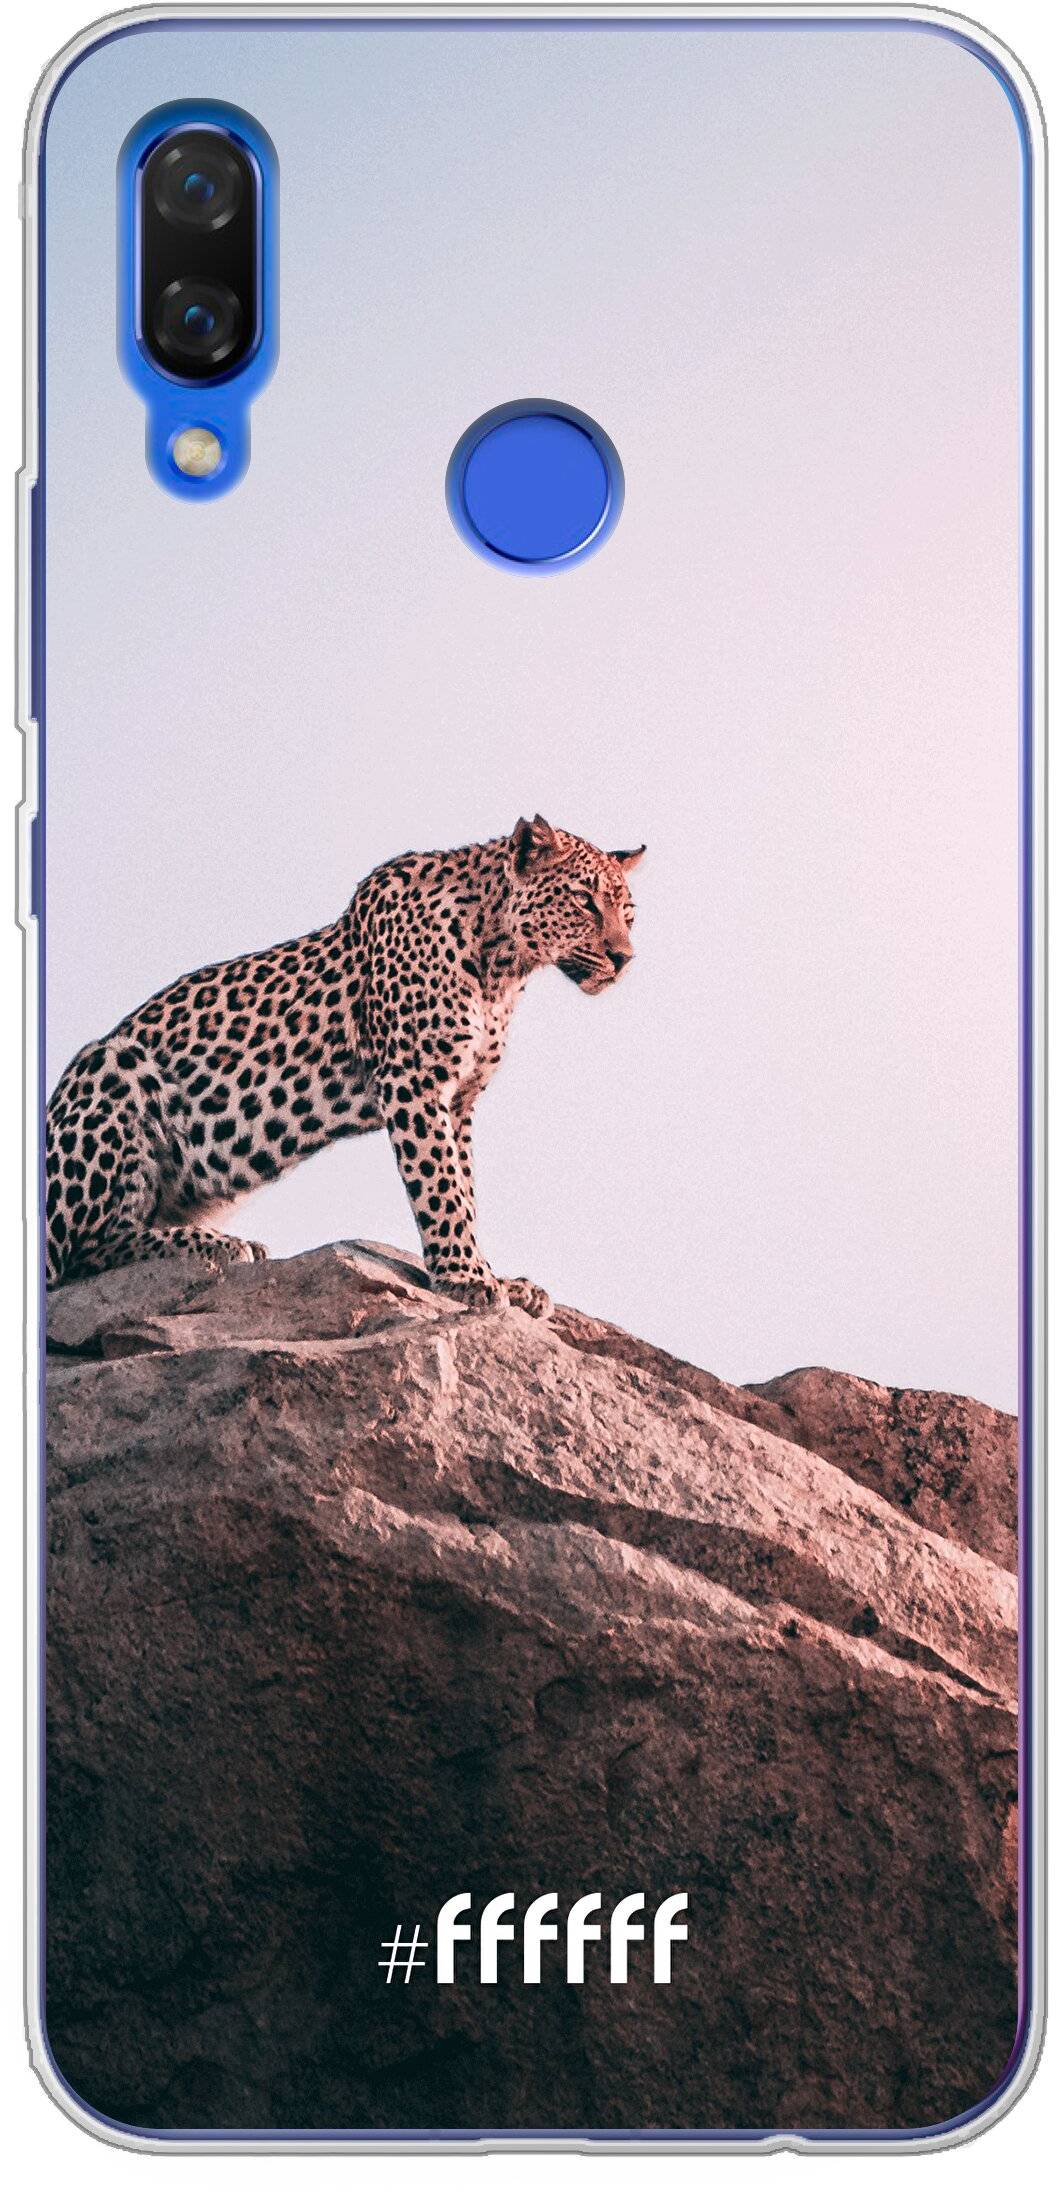 Leopard Nova 3